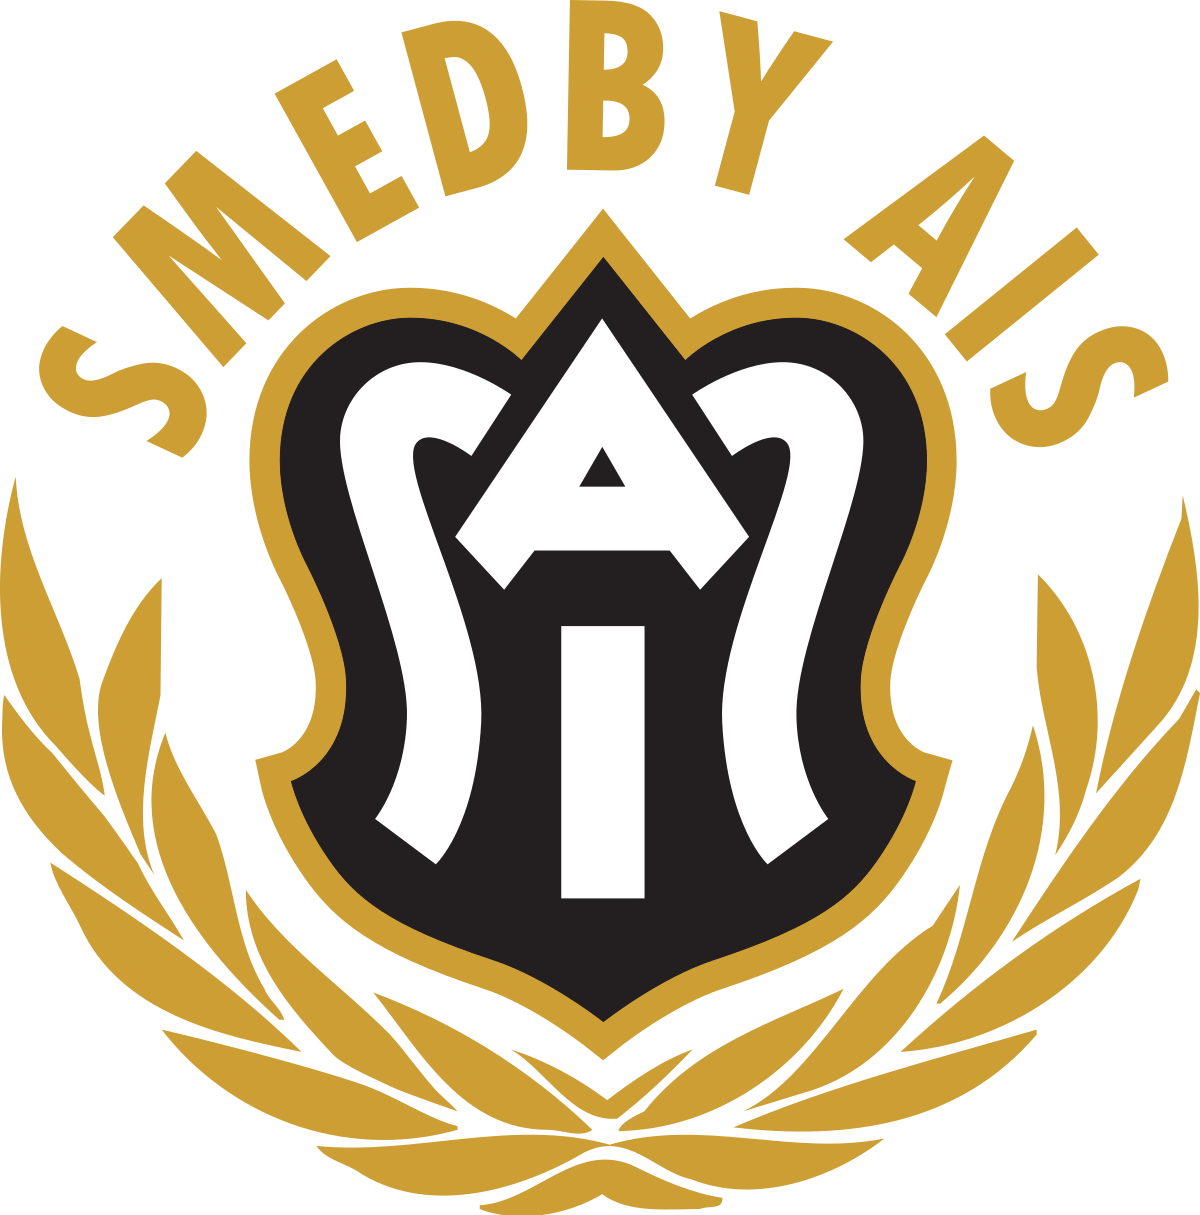 Smedby AIS Logo.Svg